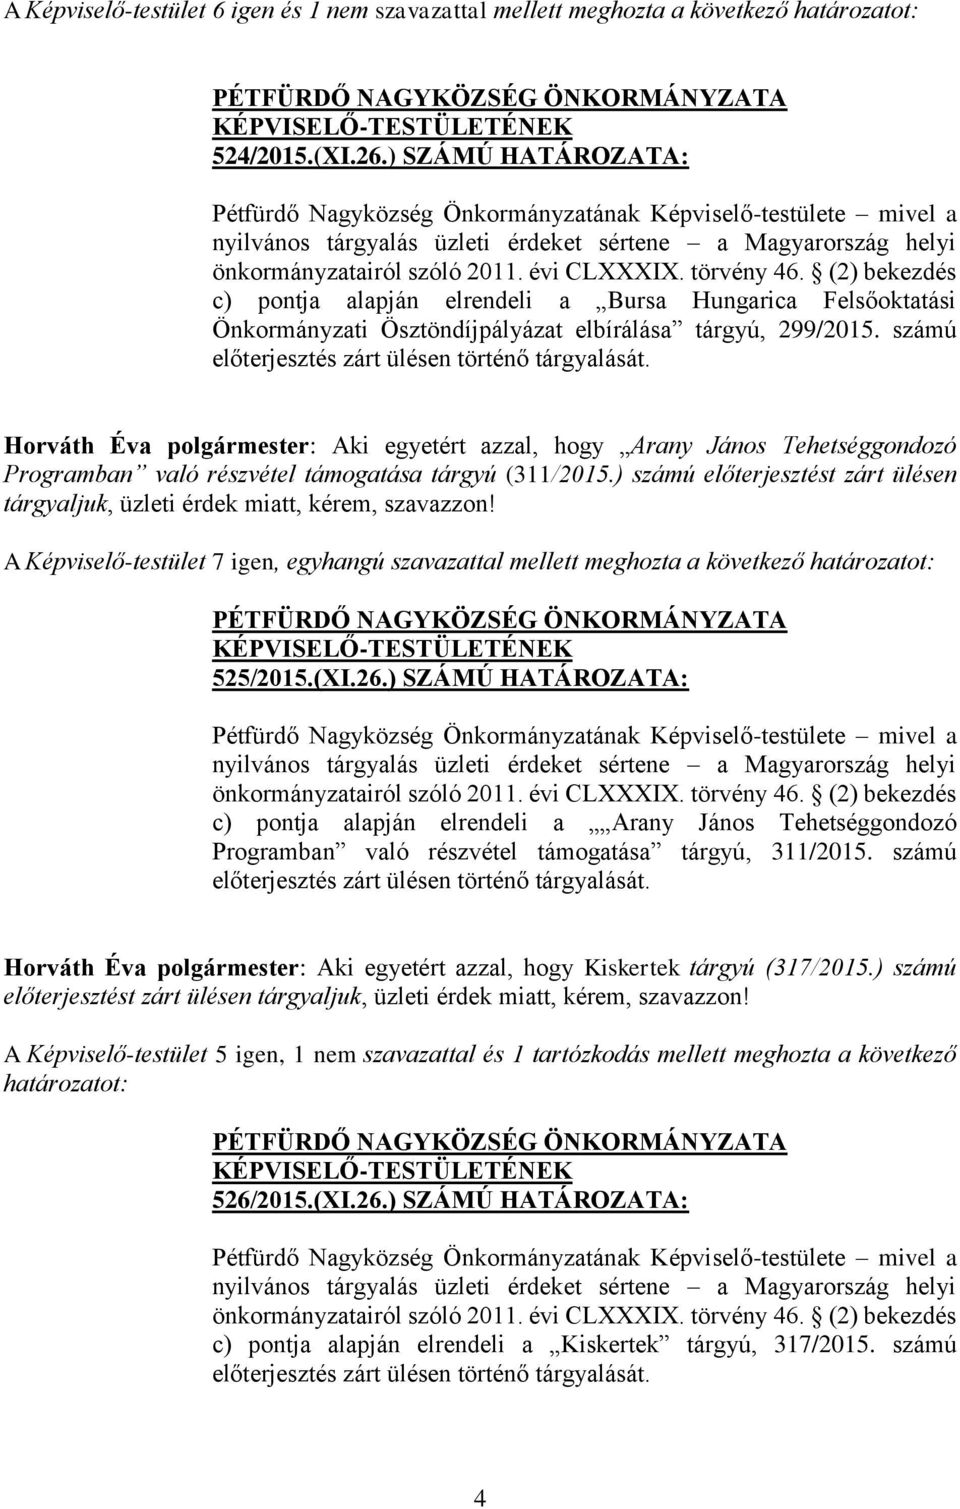 törvény 46. (2) bekezdés c) pontja alapján elrendeli a Bursa Hungarica Felsőoktatási Önkormányzati Ösztöndíjpályázat elbírálása tárgyú, 299/2015. számú előterjesztés zárt ülésen történő tárgyalását.